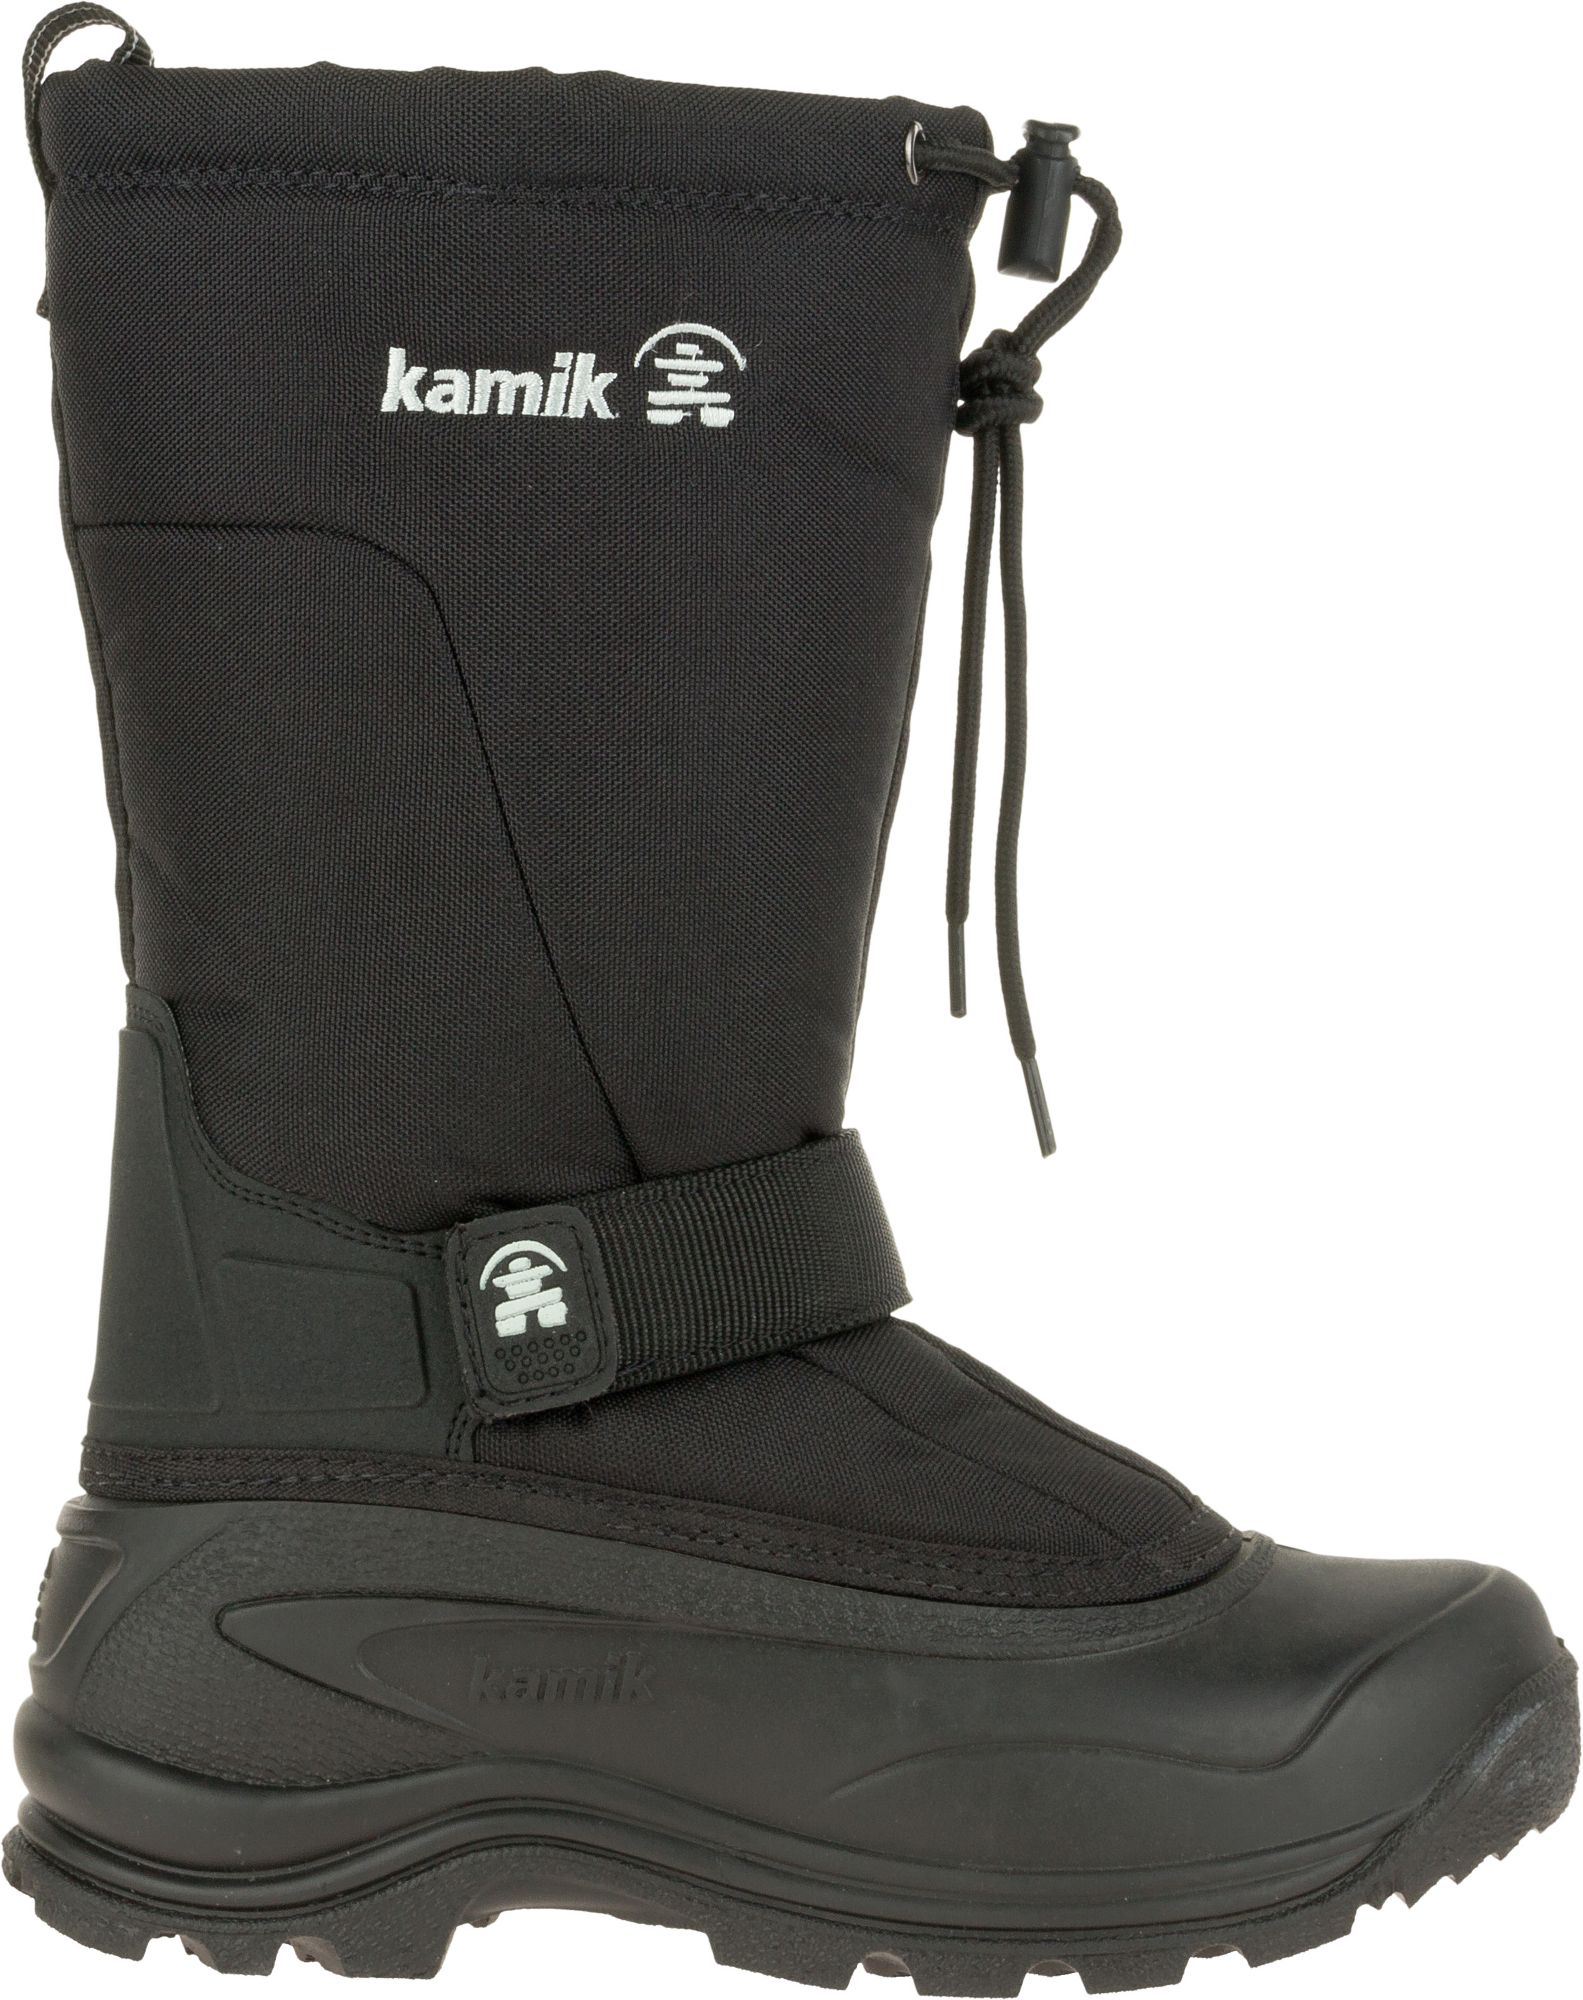 kamik hunter men's waterproof winter boots